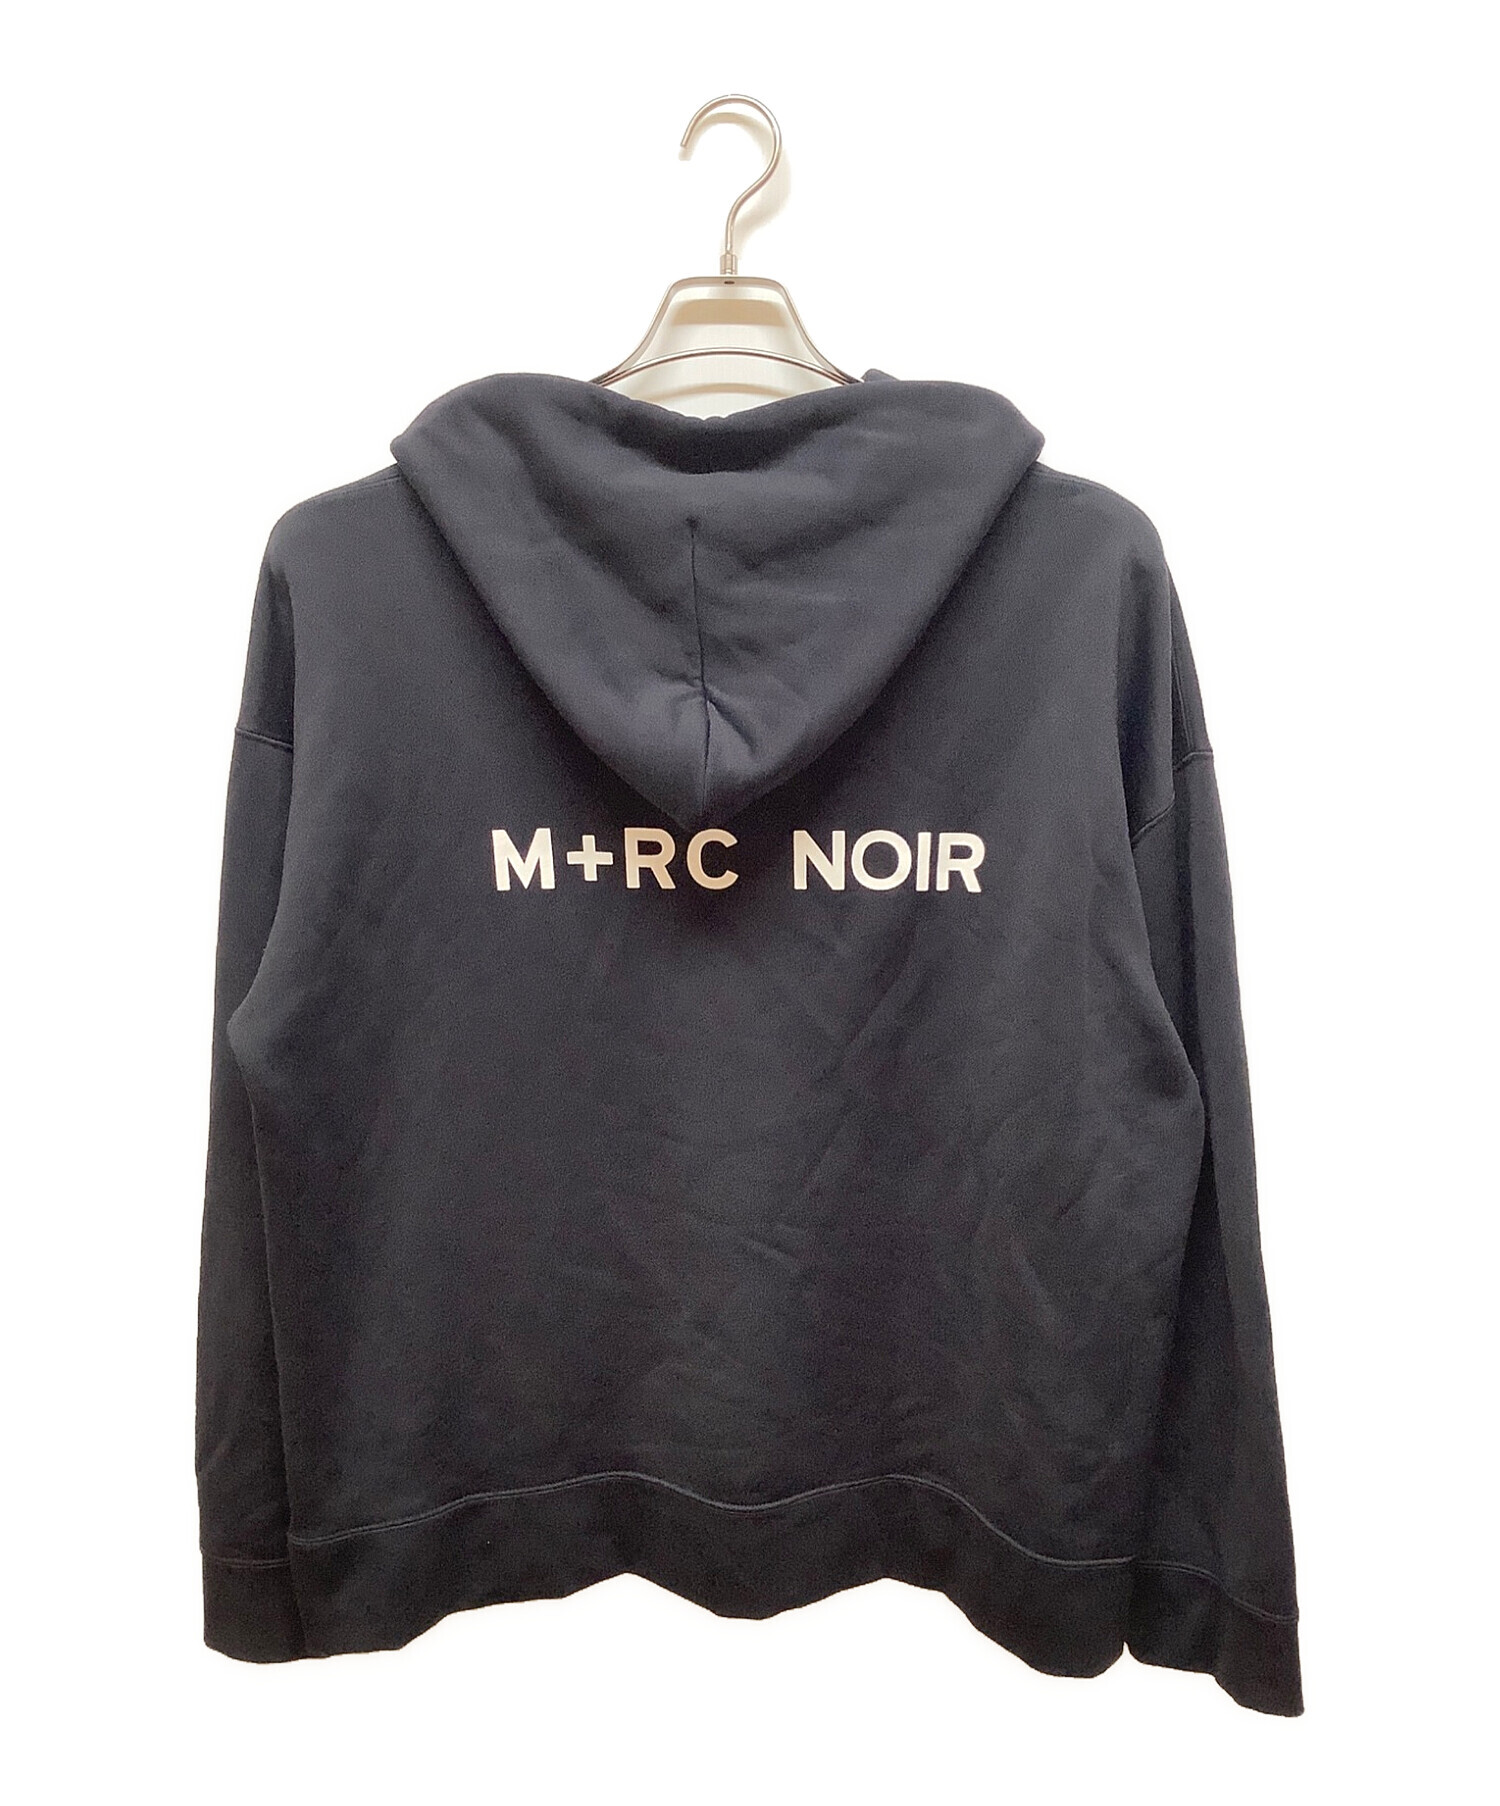 M + RC NOIR マルシェノア プルオーバーパーカー  Mサイズ